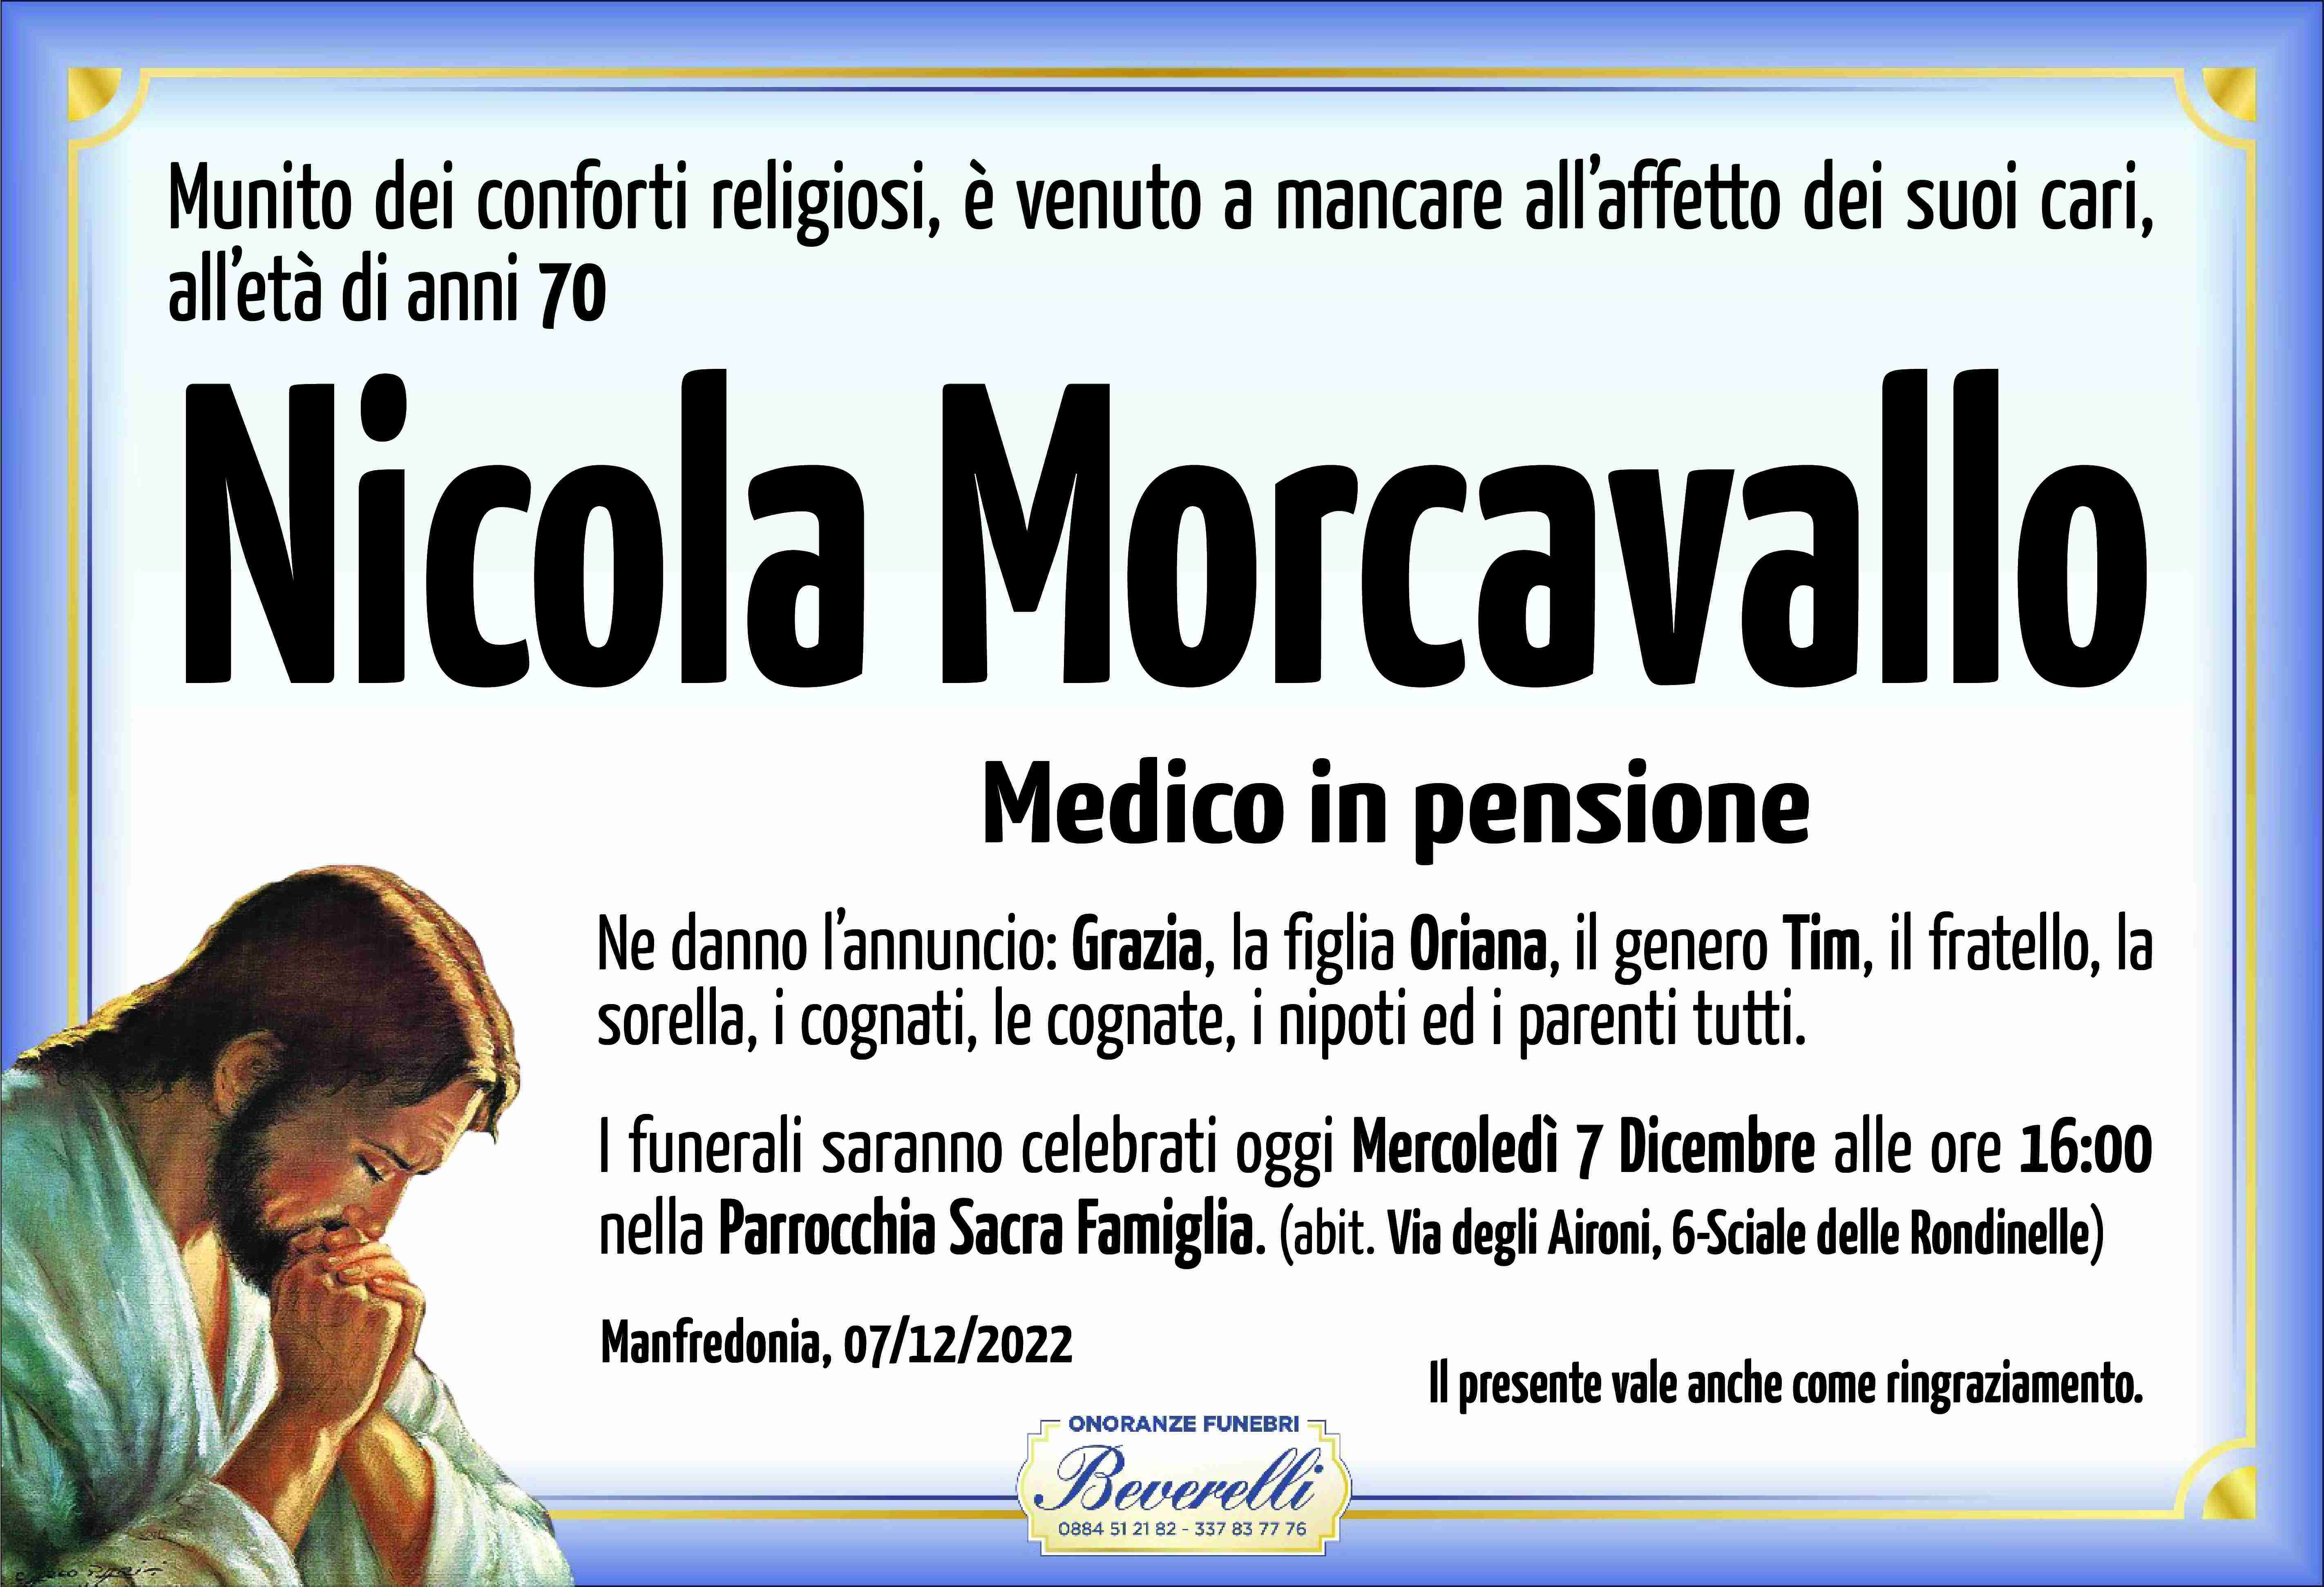 Nicola Morcavallo